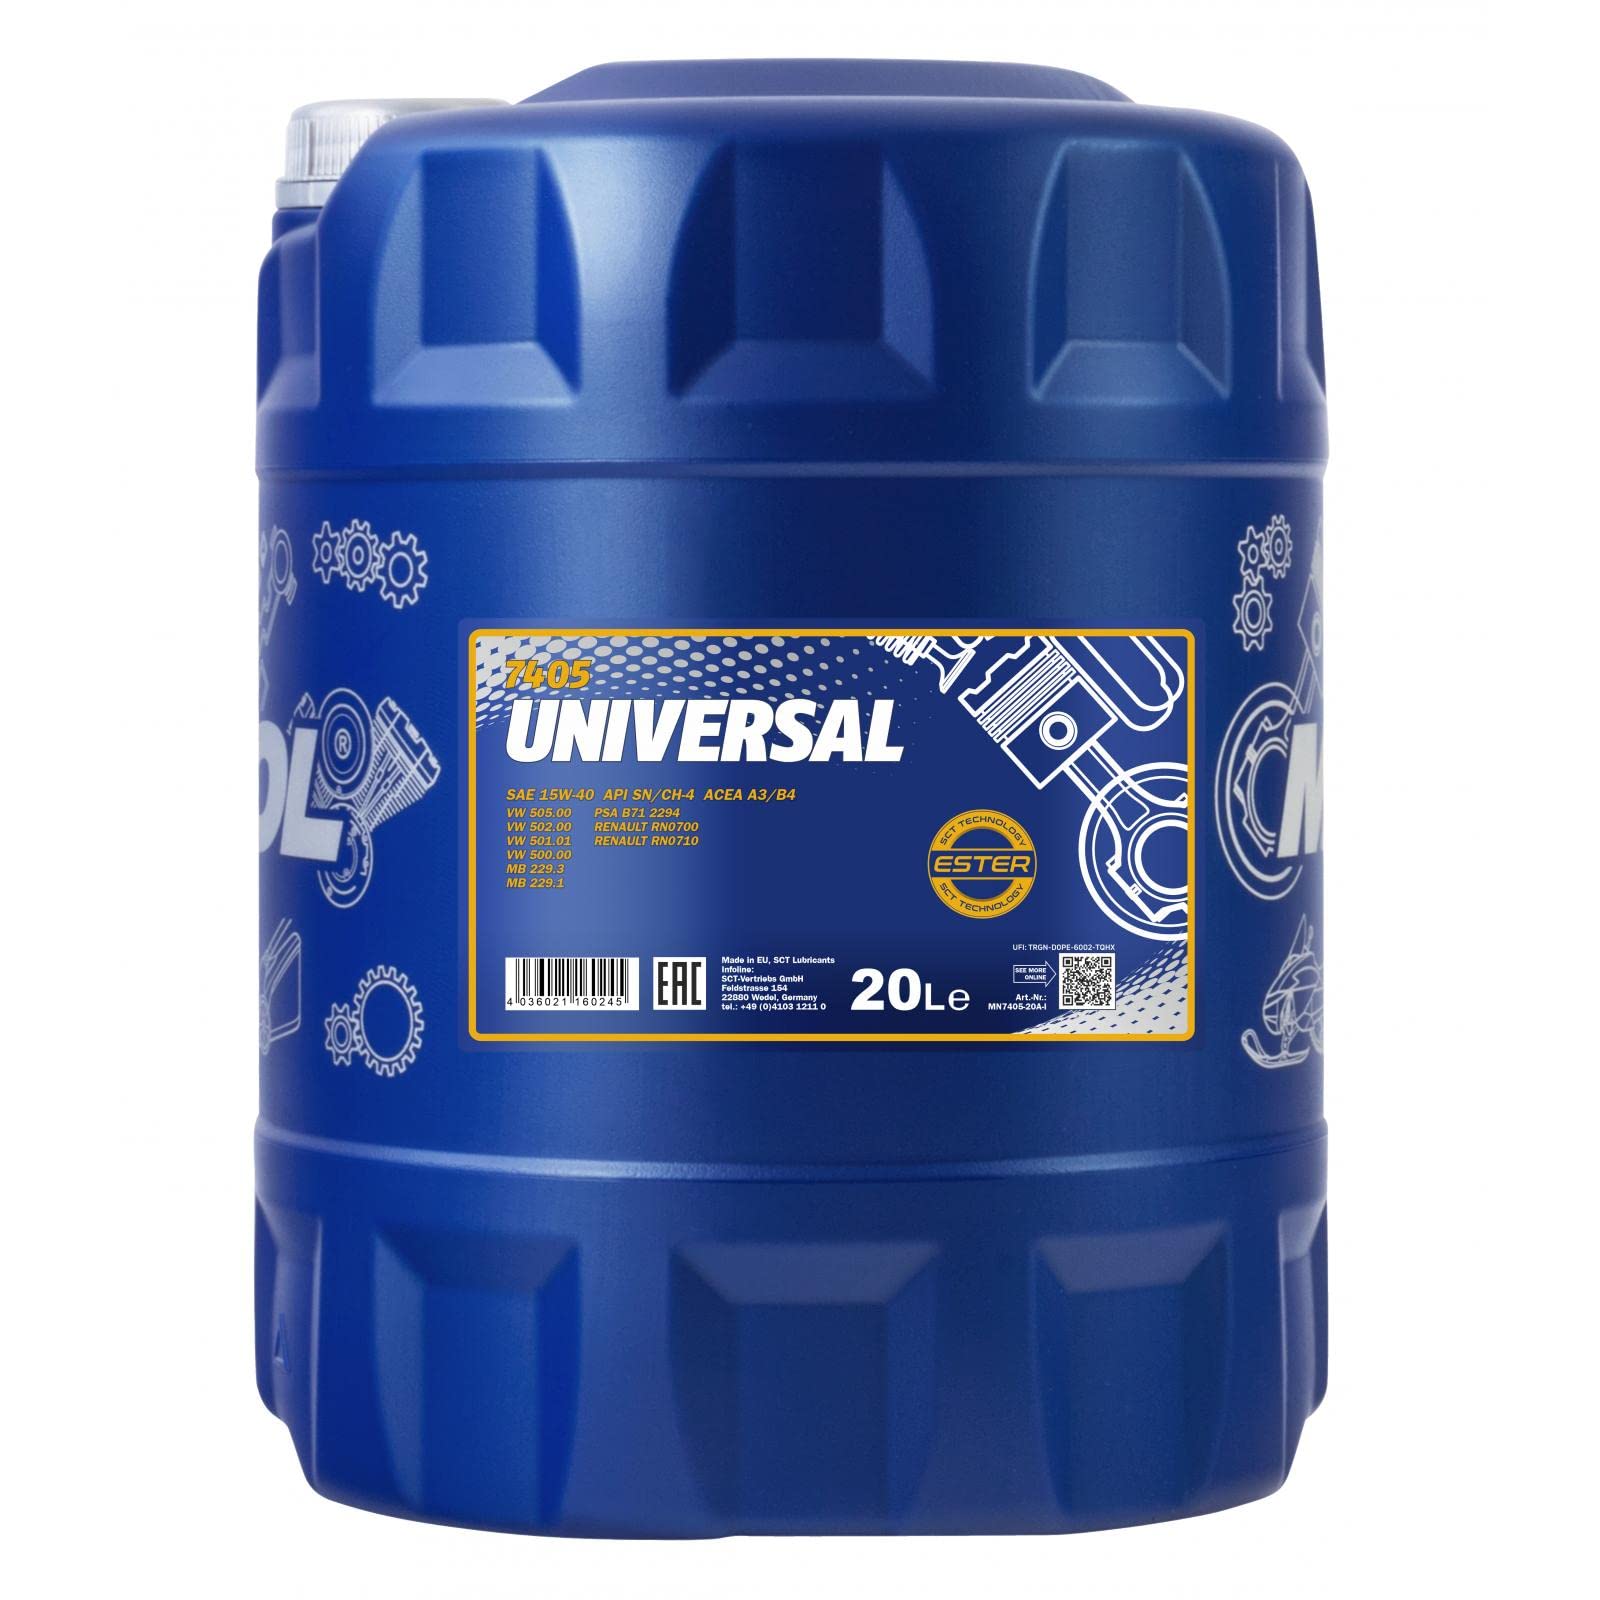 MANNOL Universal 15W-40 API SG/CD Motorenöl, 20 Liter von MANNOL